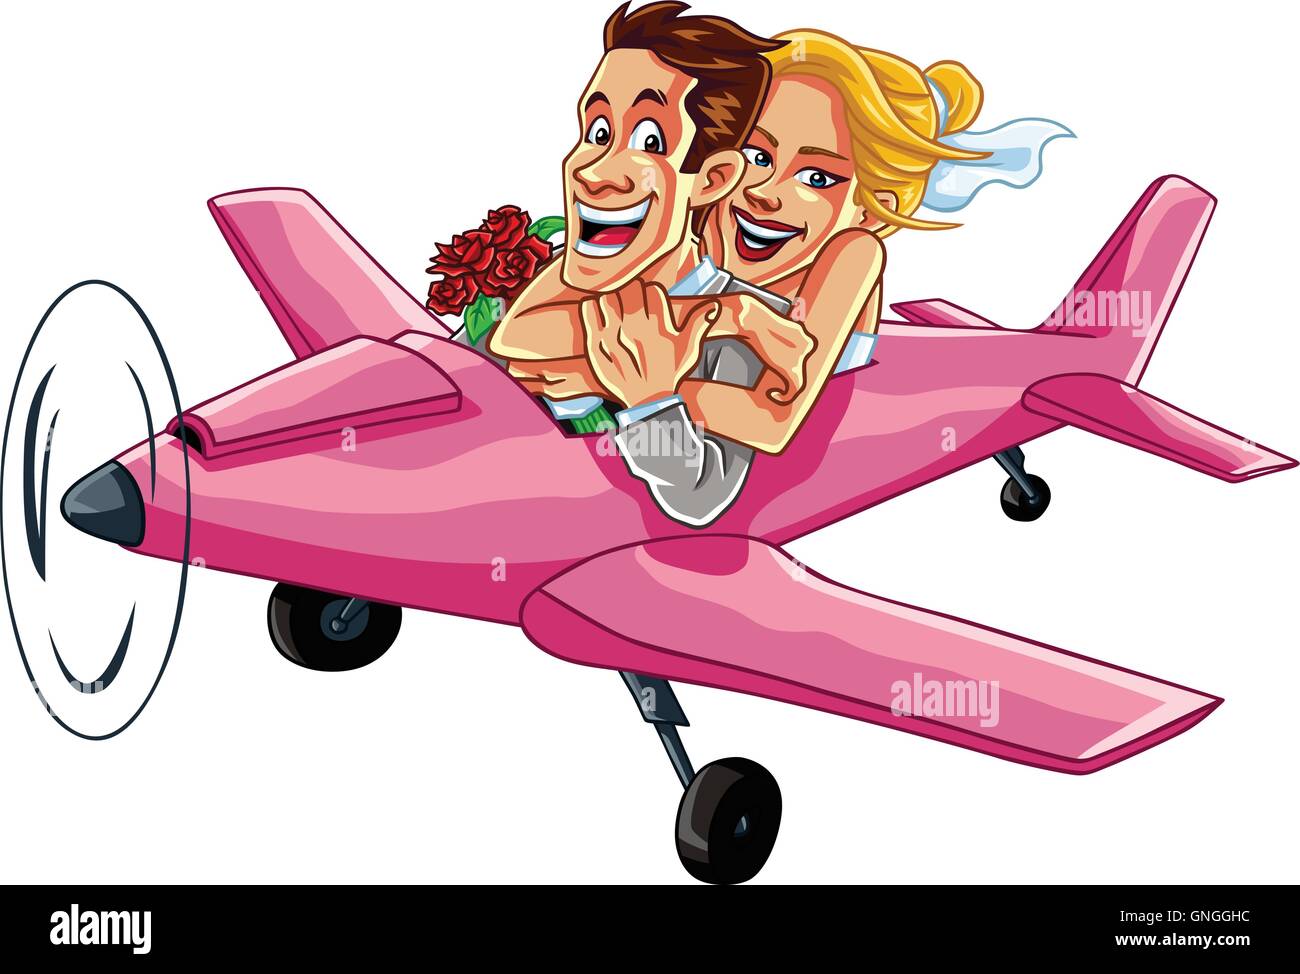 Récemment Mariés Couple Riding A Plan rose sur un voyage de noces Illustration de Vecteur